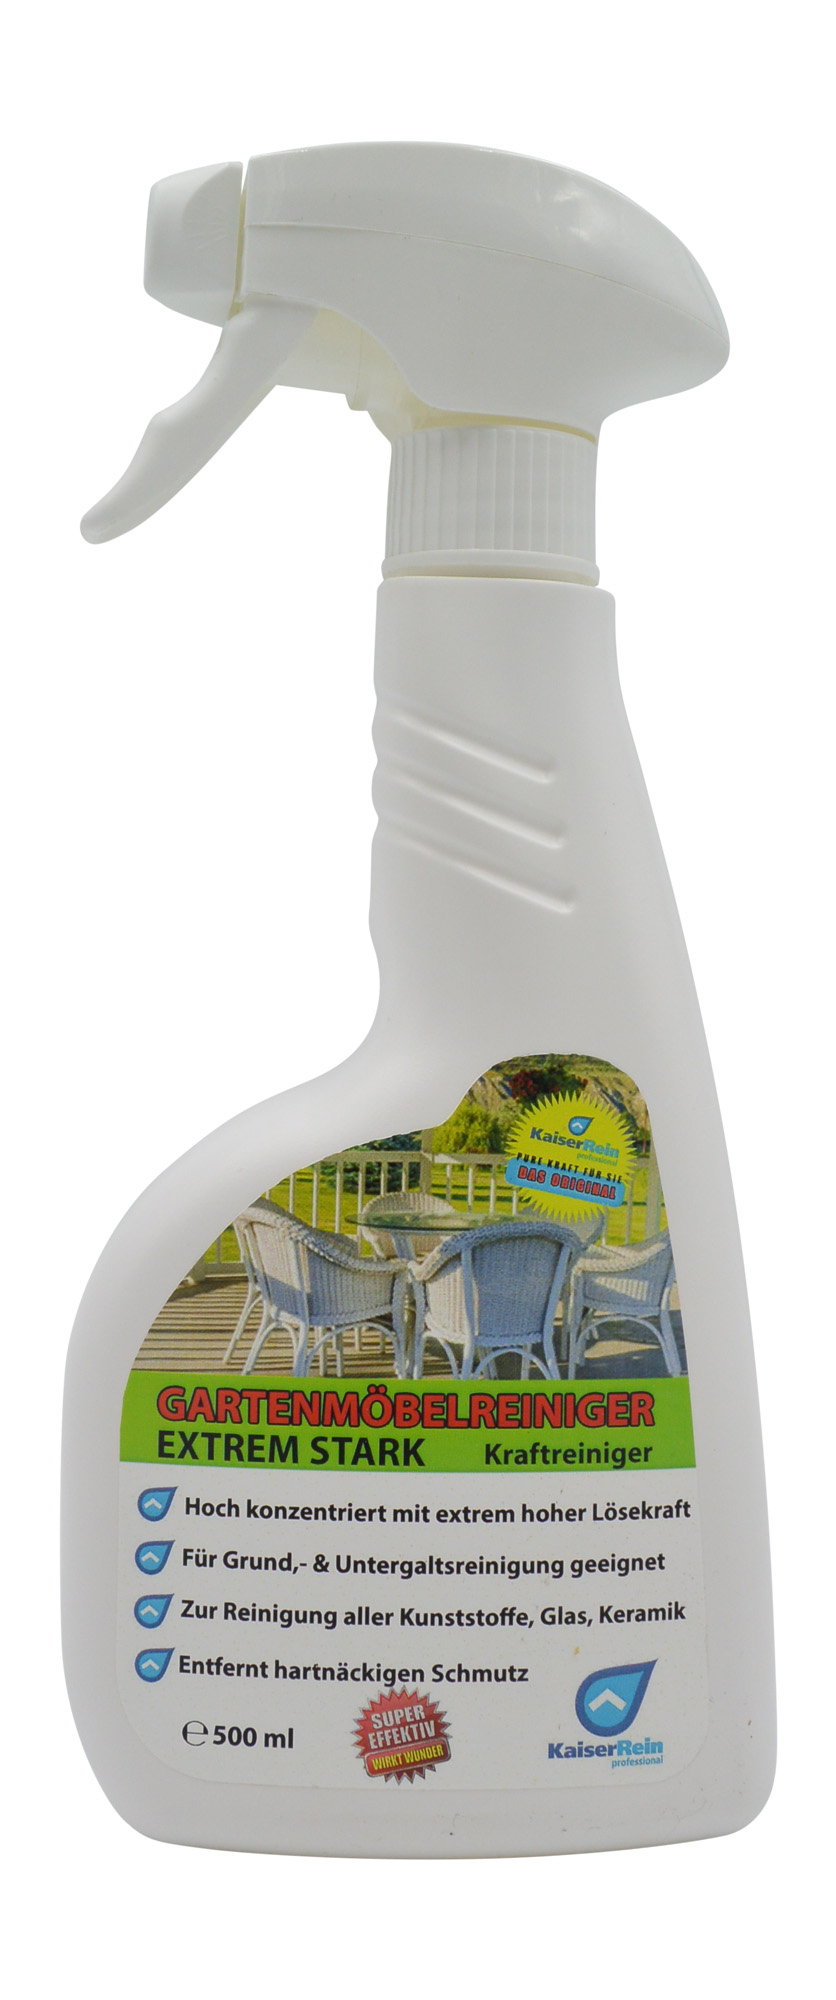 Gartenmöbel Reiniger 500 ml Sprühflasche Extrem Stark / Kraftreiniger / zum Putzen von Gartenmöbeln